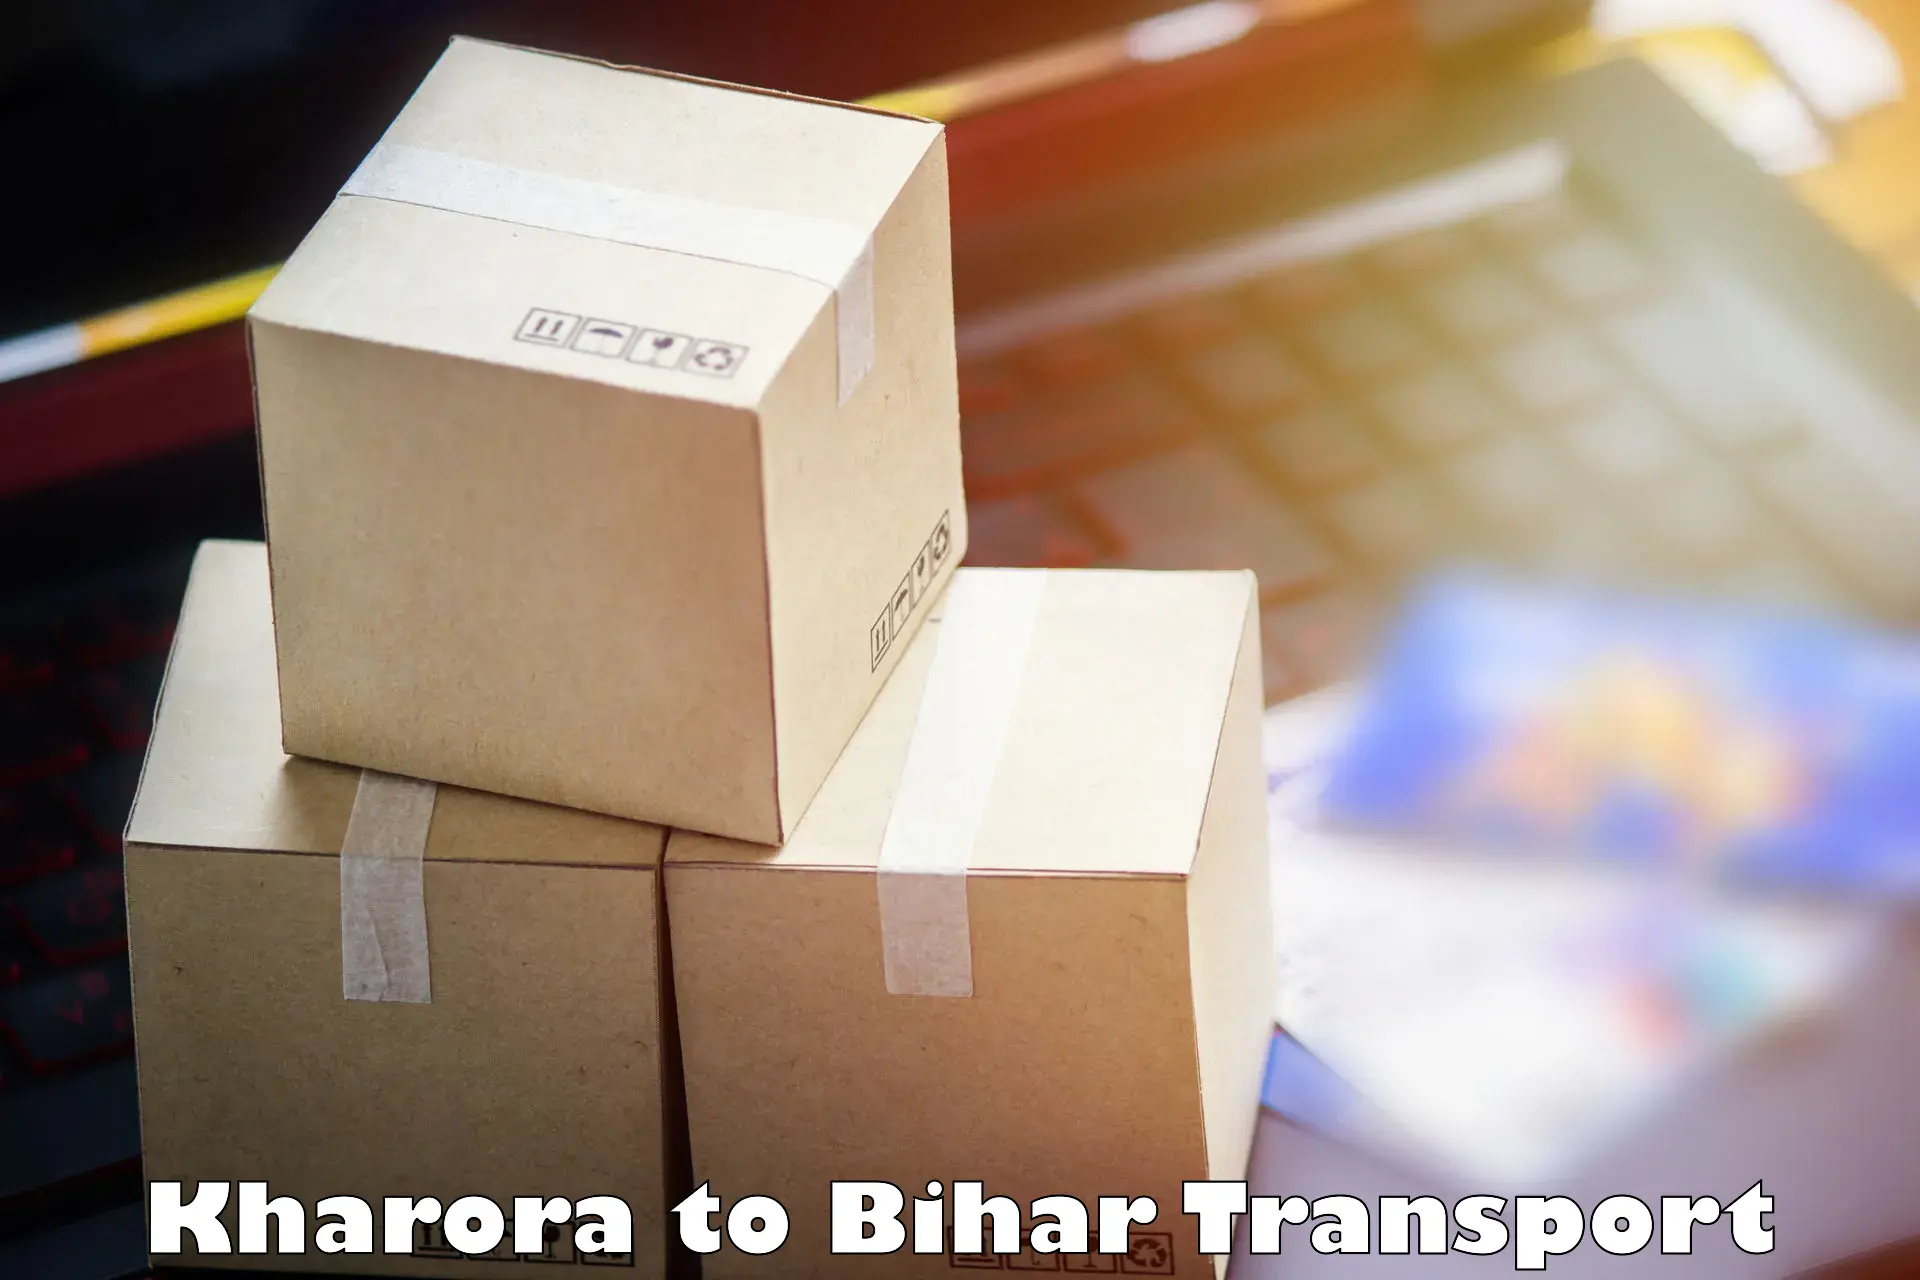 Commercial transport service Kharora to Bakhtiarpur